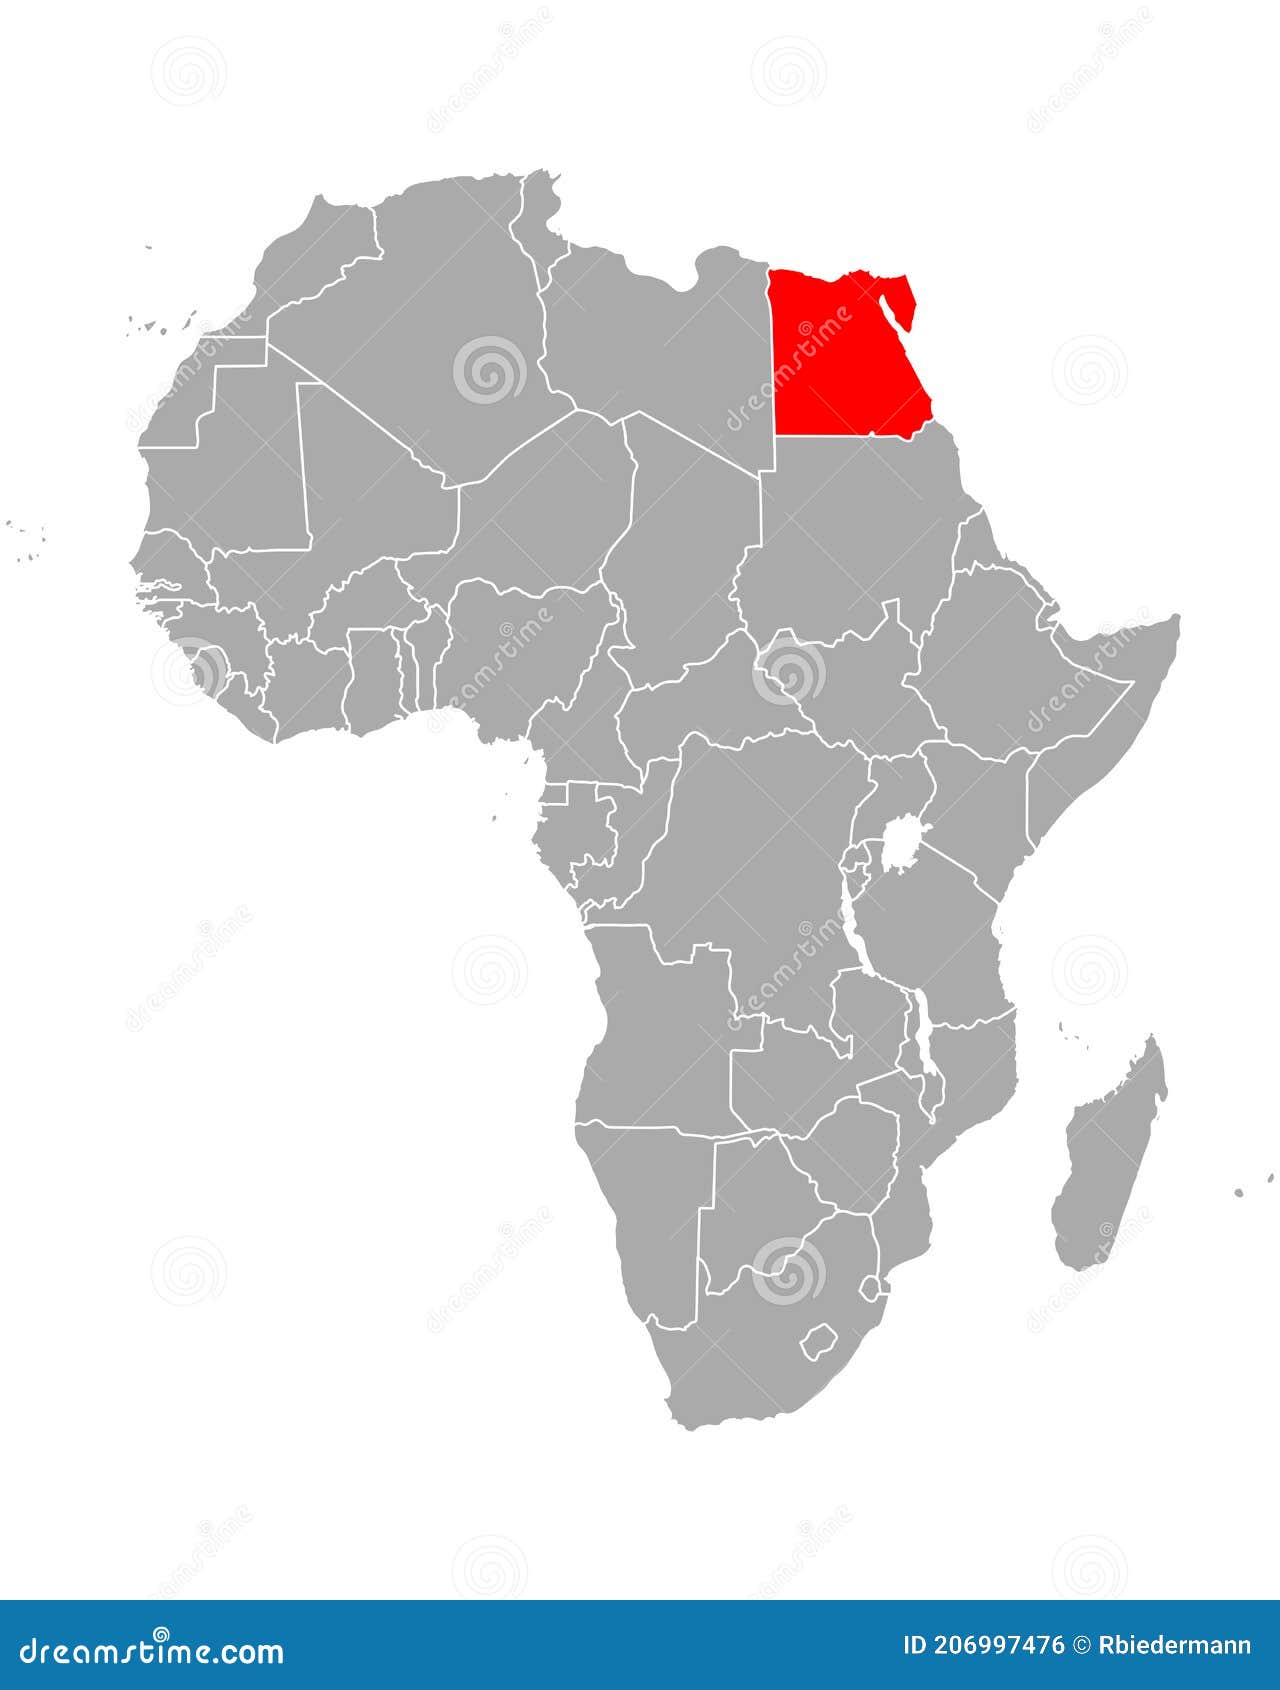 Ícones Da Bandeira Do Ponteiro De África Com Mapa Africano Set1 Ilustração  do Vetor - Ilustração de egipto, marfim: 31568852